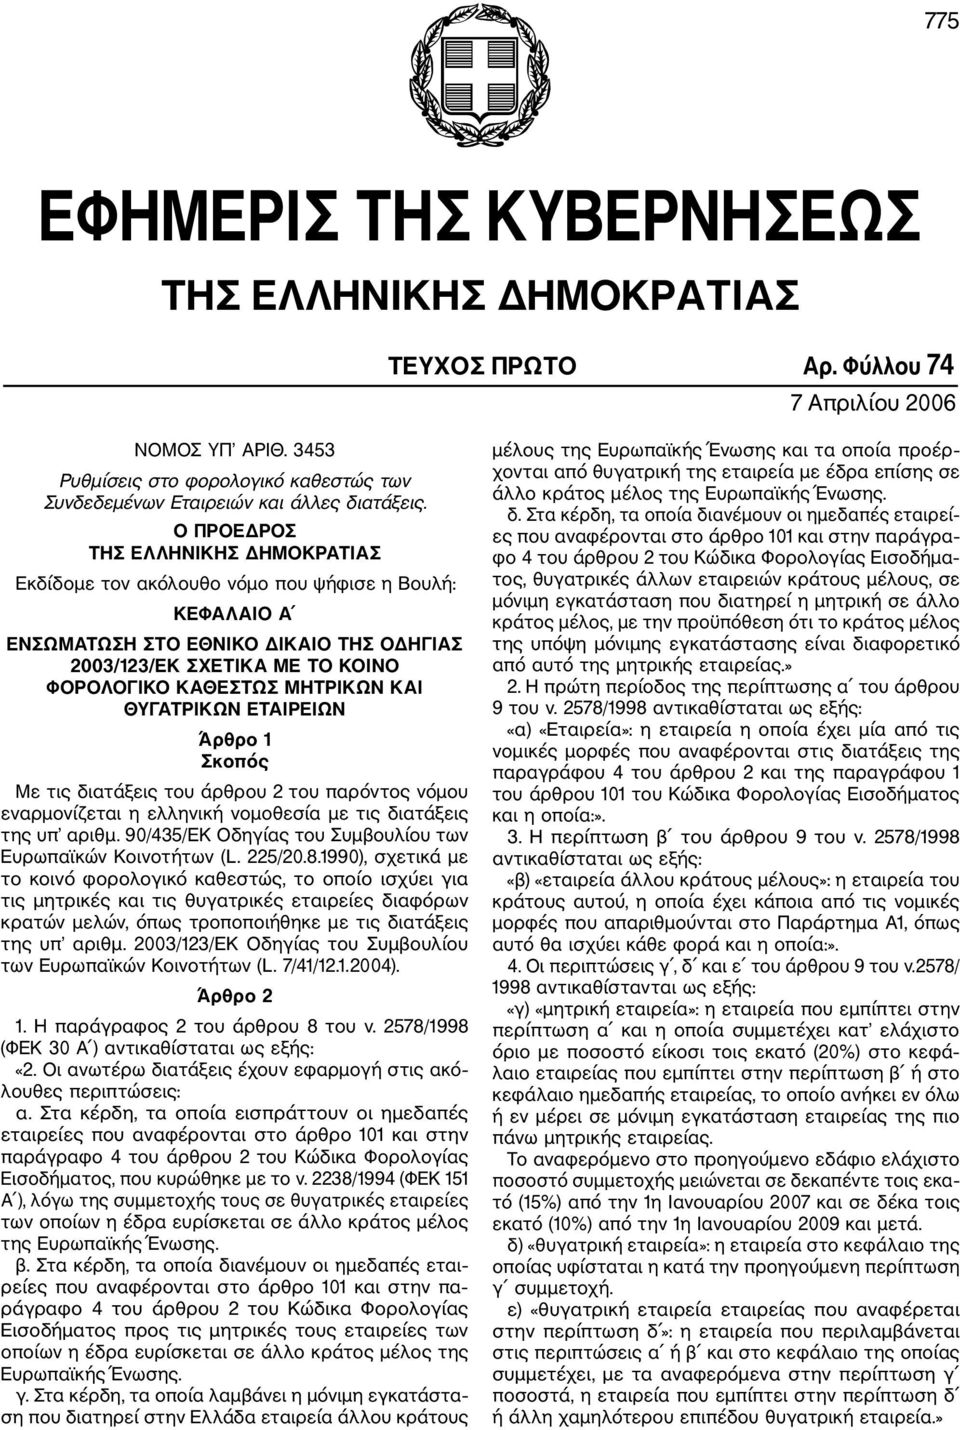 ΚΑΙ ΘΥΓΑΤΡΙΚΩΝ ΕΤΑΙΡΕΙΩΝ Άρθρο 1 Σκοπός Με τις διατάξεις του άρθρου 2 του παρόντος νόμου εναρμονίζεται η ελληνική νομοθεσία με τις διατάξεις της υπ αριθμ.